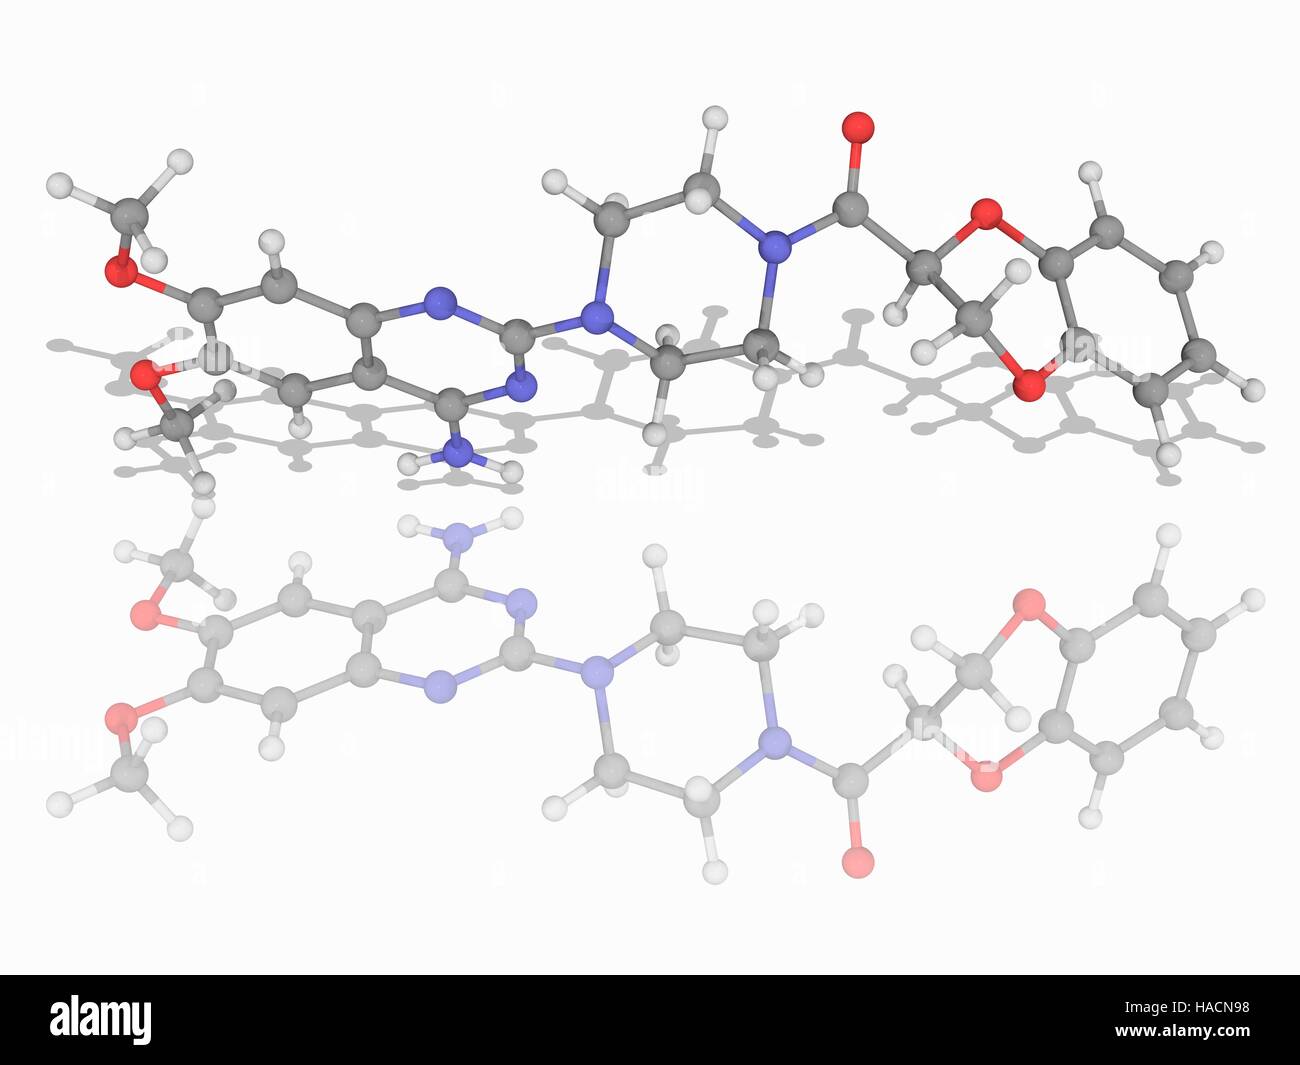 Doxazosin. Molekulares Modell des Medikaments Doxazosin (C23. H25. N5. O5), ein Alpha-1-adrenergen Rezeptor-Blocker zur Behandlung von hohem Blutdruck. Atome als Kugeln dargestellt werden und sind farblich gekennzeichnet: Kohlenstoff (grau), Wasserstoff (weiß), Stickstoff (blau) und Sauerstoff (rot). Abbildung. Stockfoto